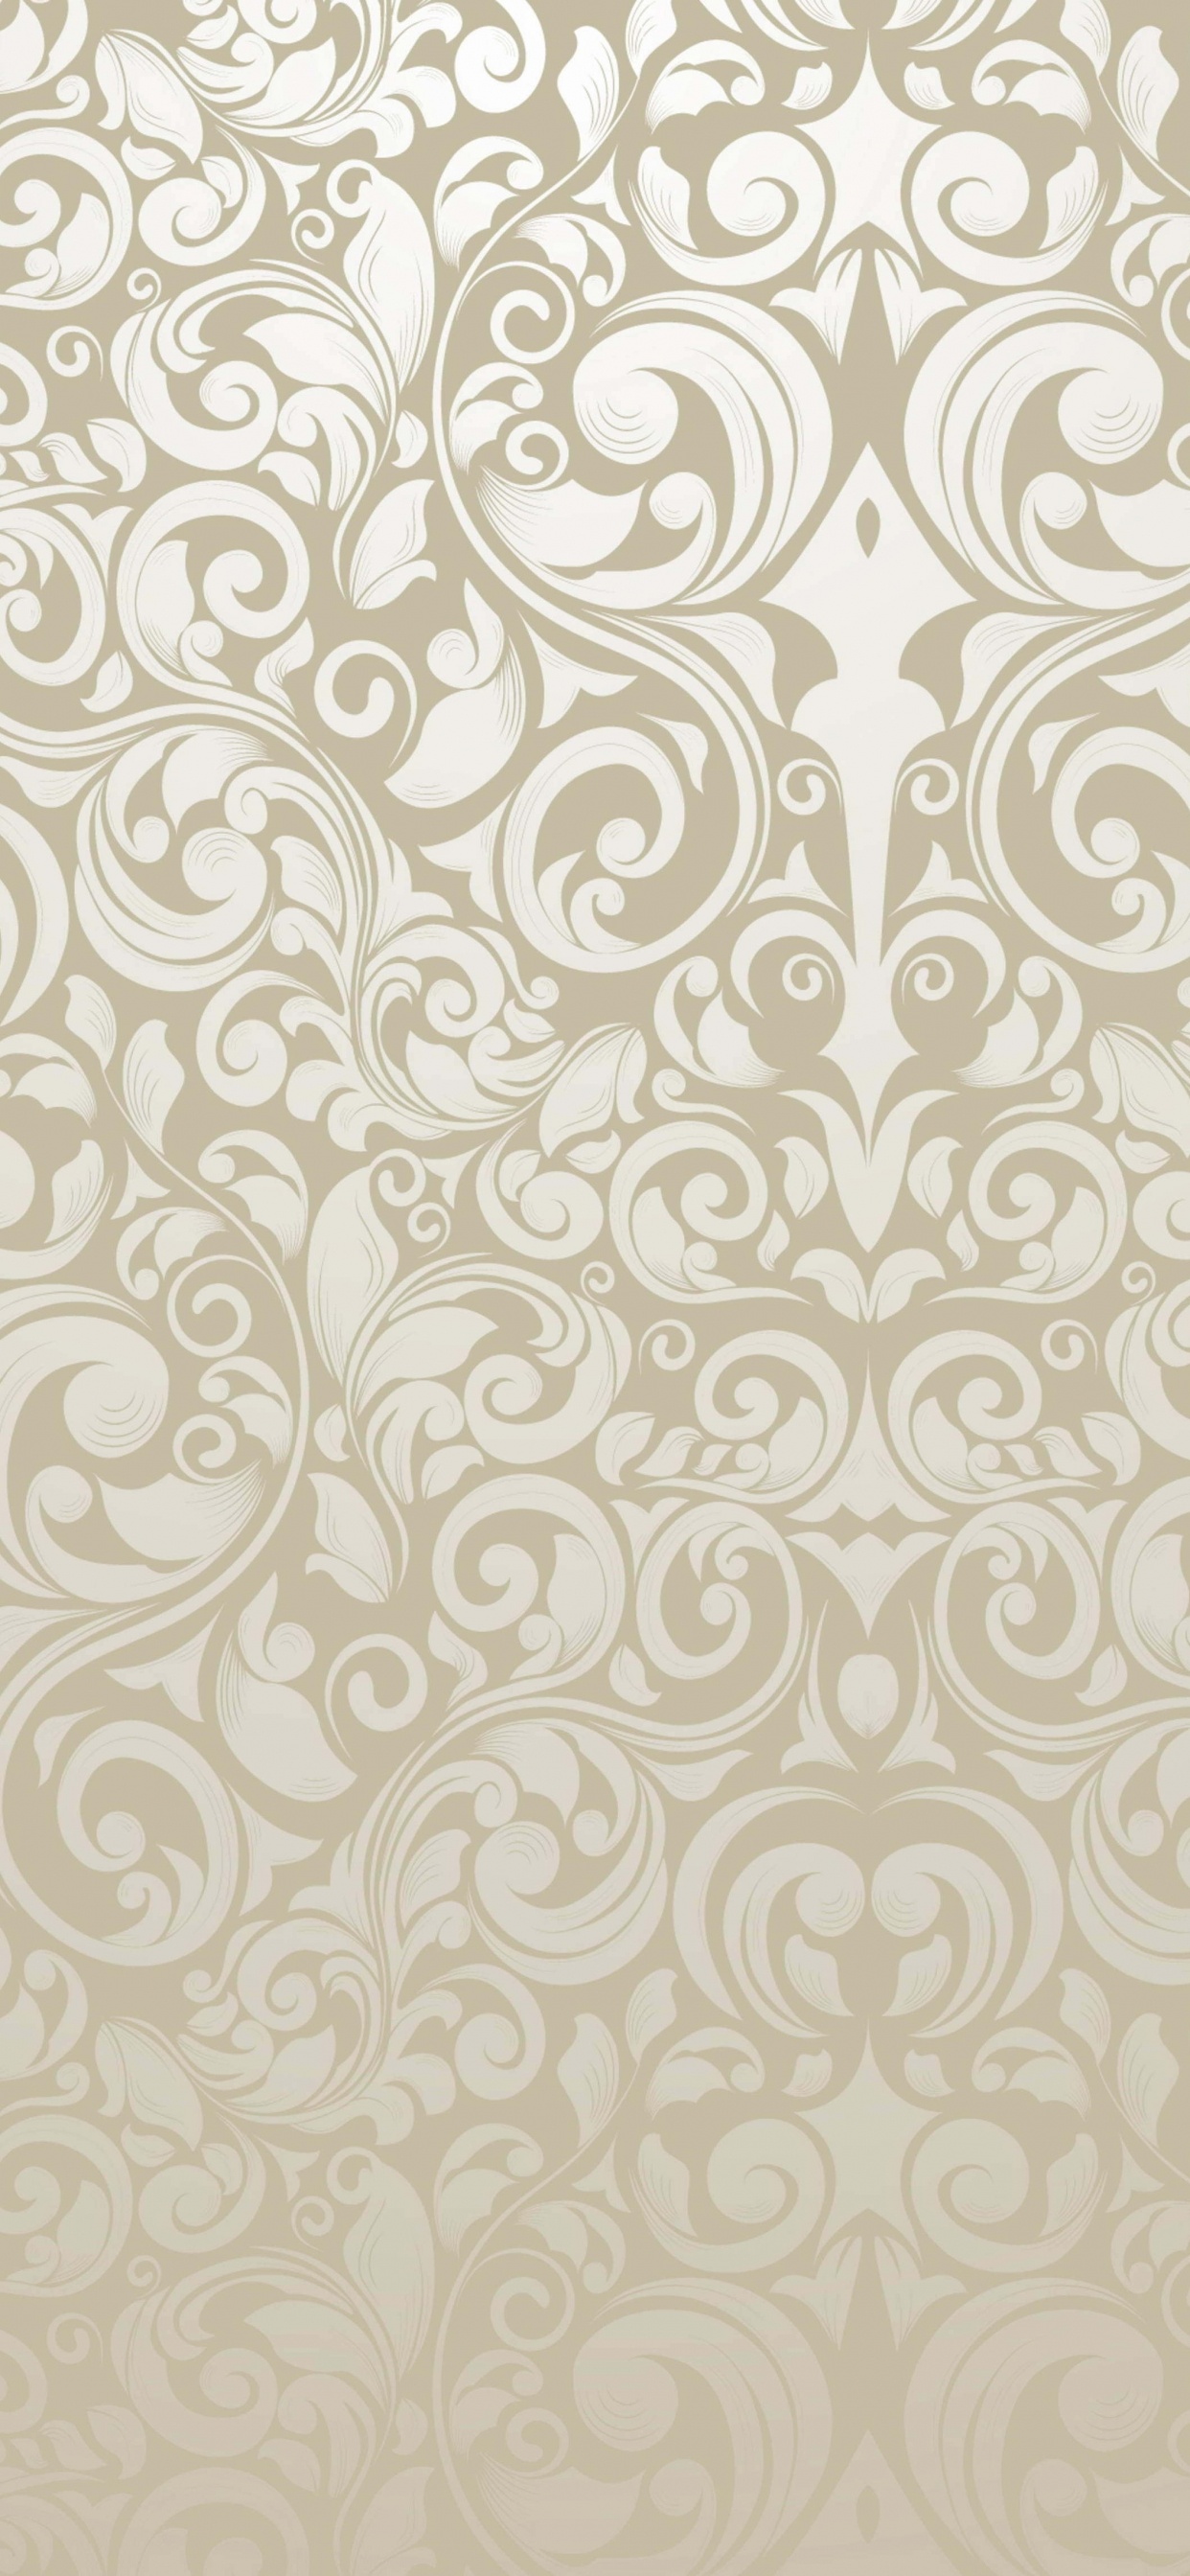 Textile Floral Blanc et Noir. Wallpaper in 1242x2688 Resolution